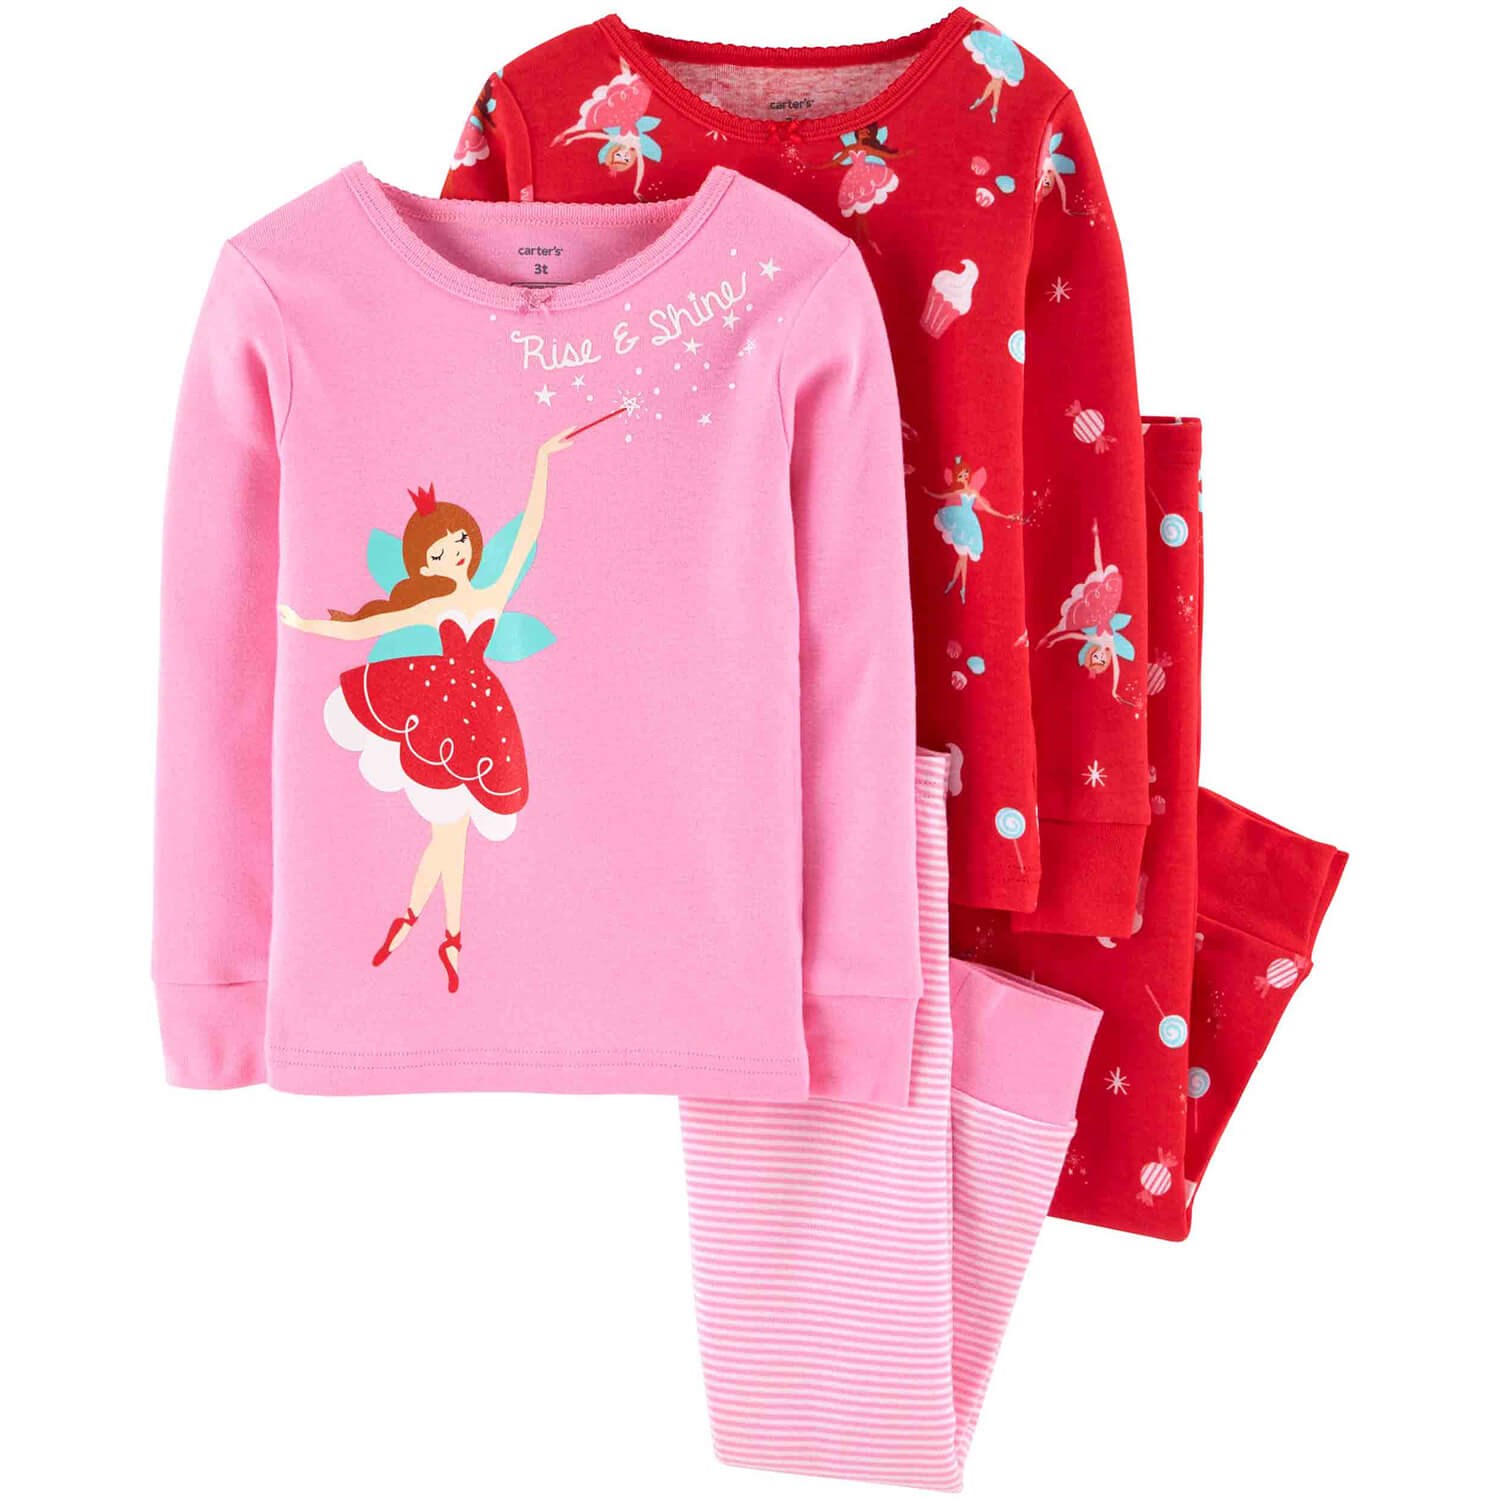 Carter's Balerin 4'lü Bebek Pijama Takımı Pembe-Kırmızı